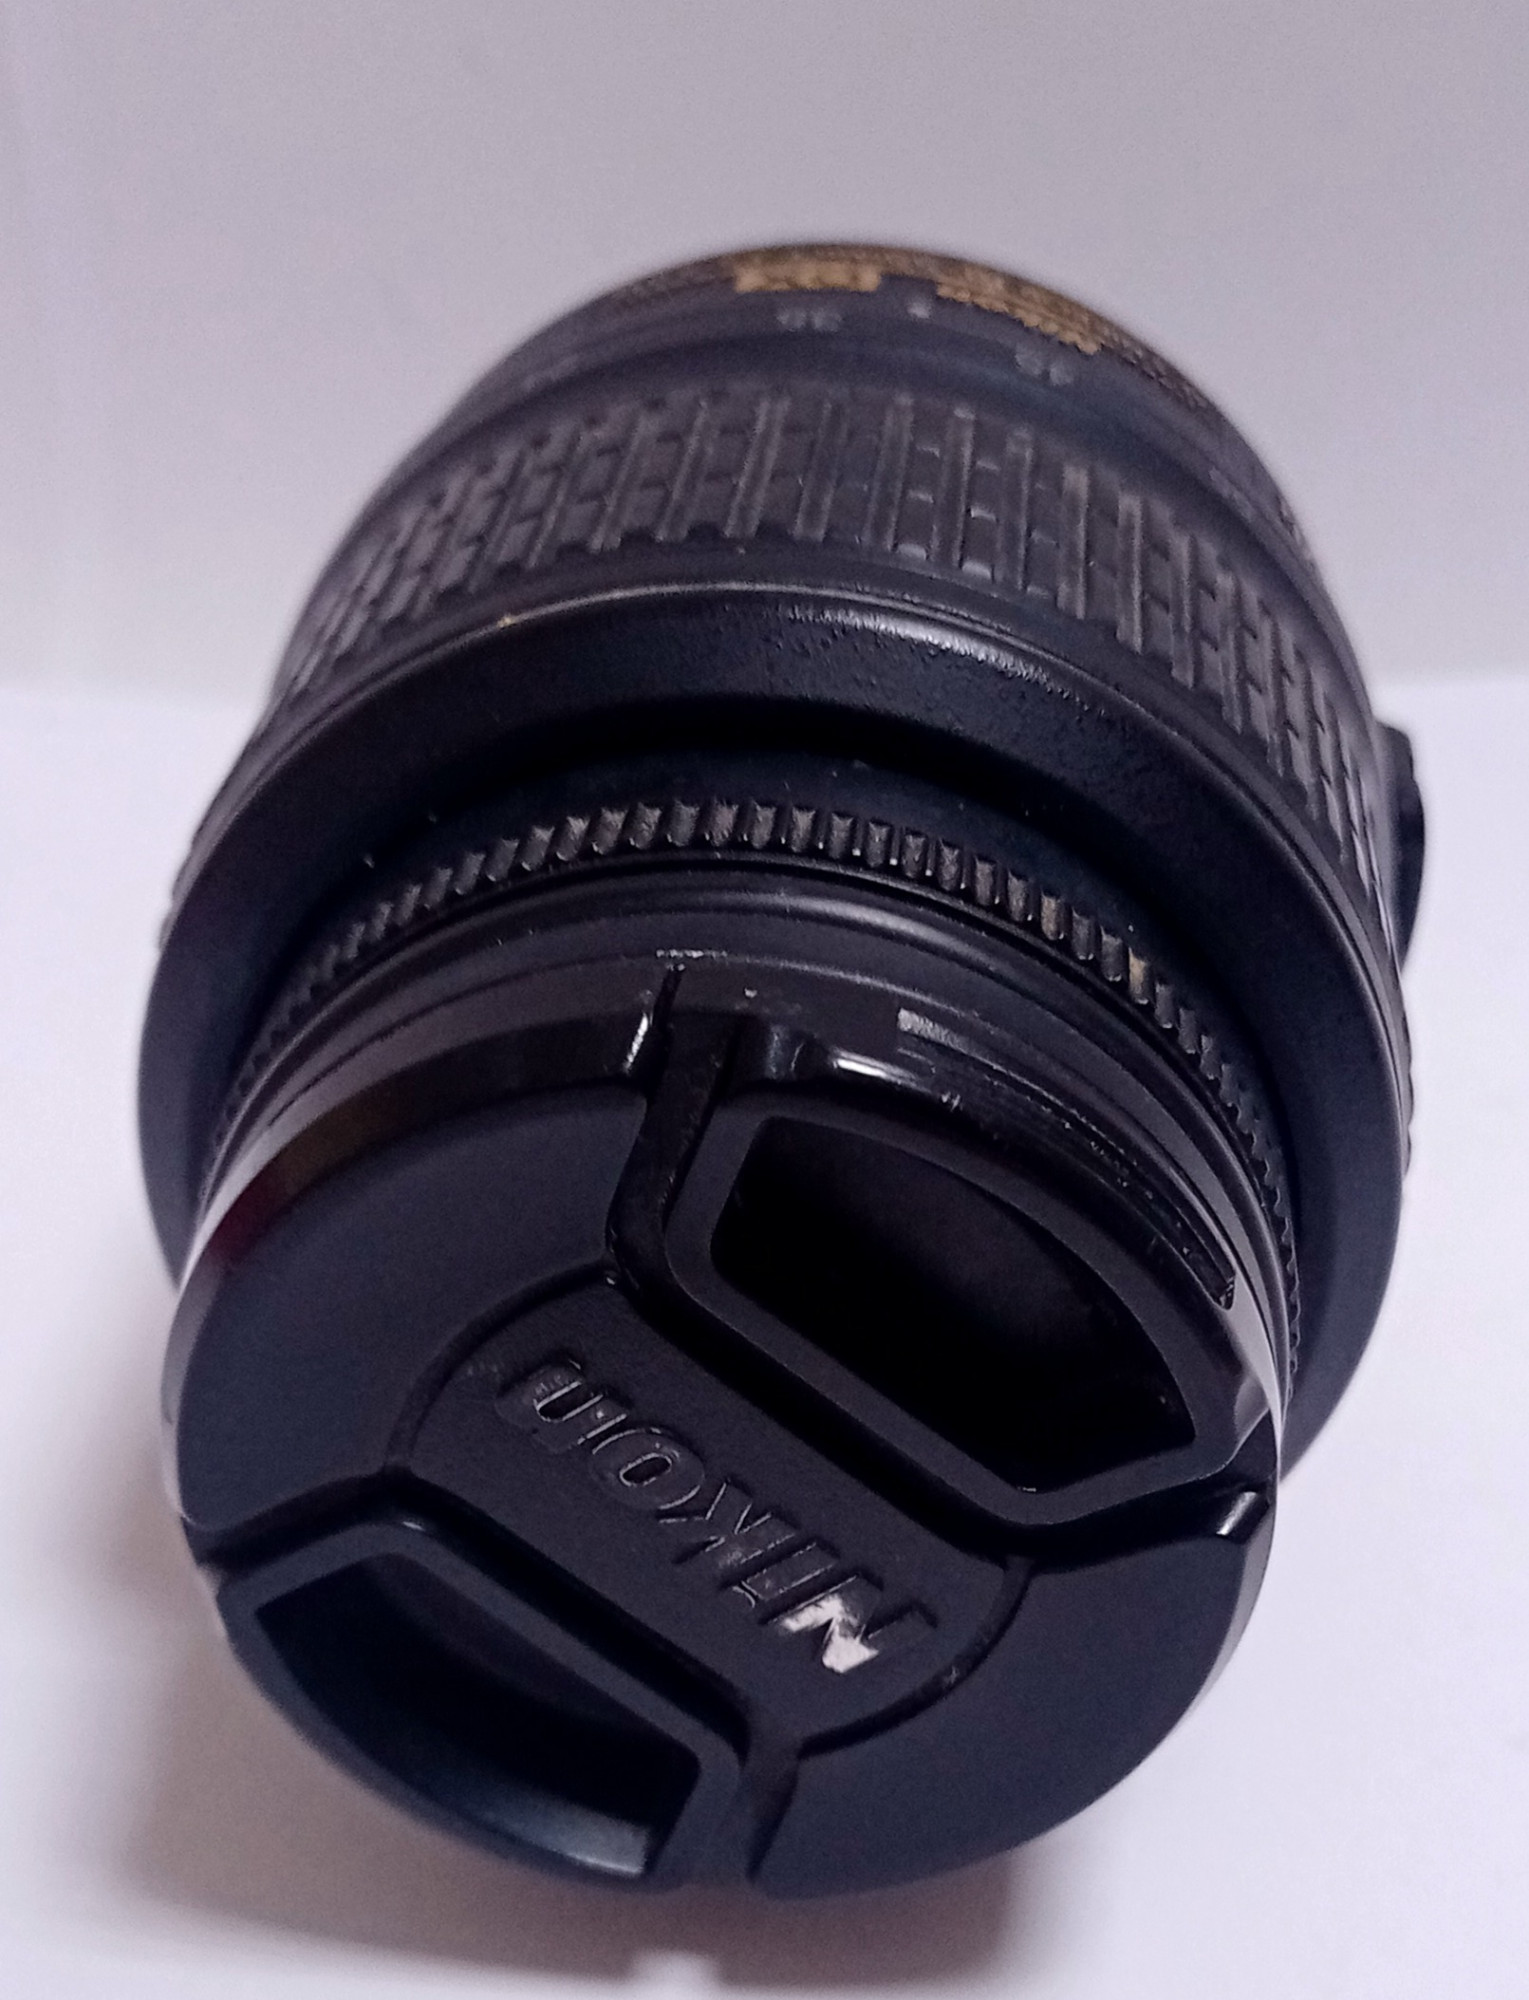 Об'єктив Nikon AF-S Nikkor 18-55mm 1/3.5-5.6 G 2